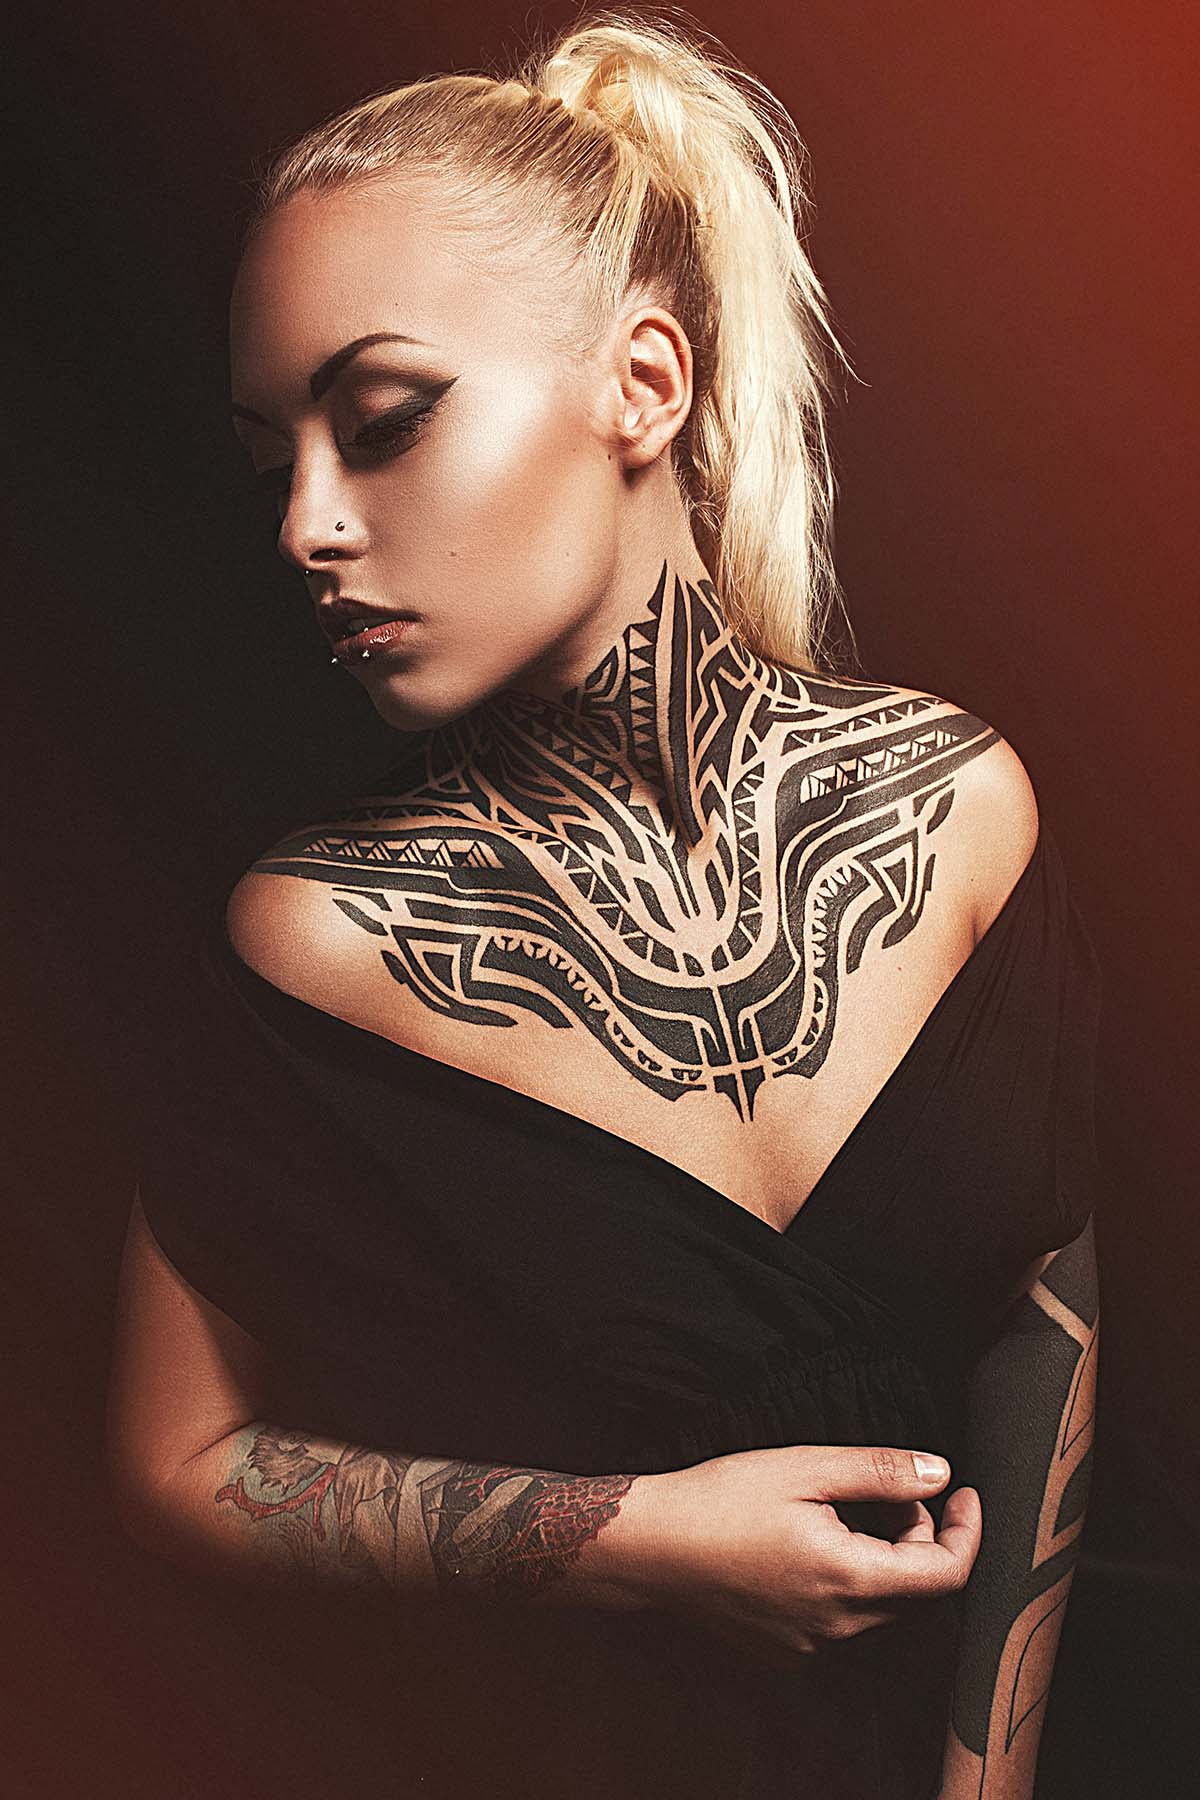 anne oppermann share female genital tattoos tumblr photos